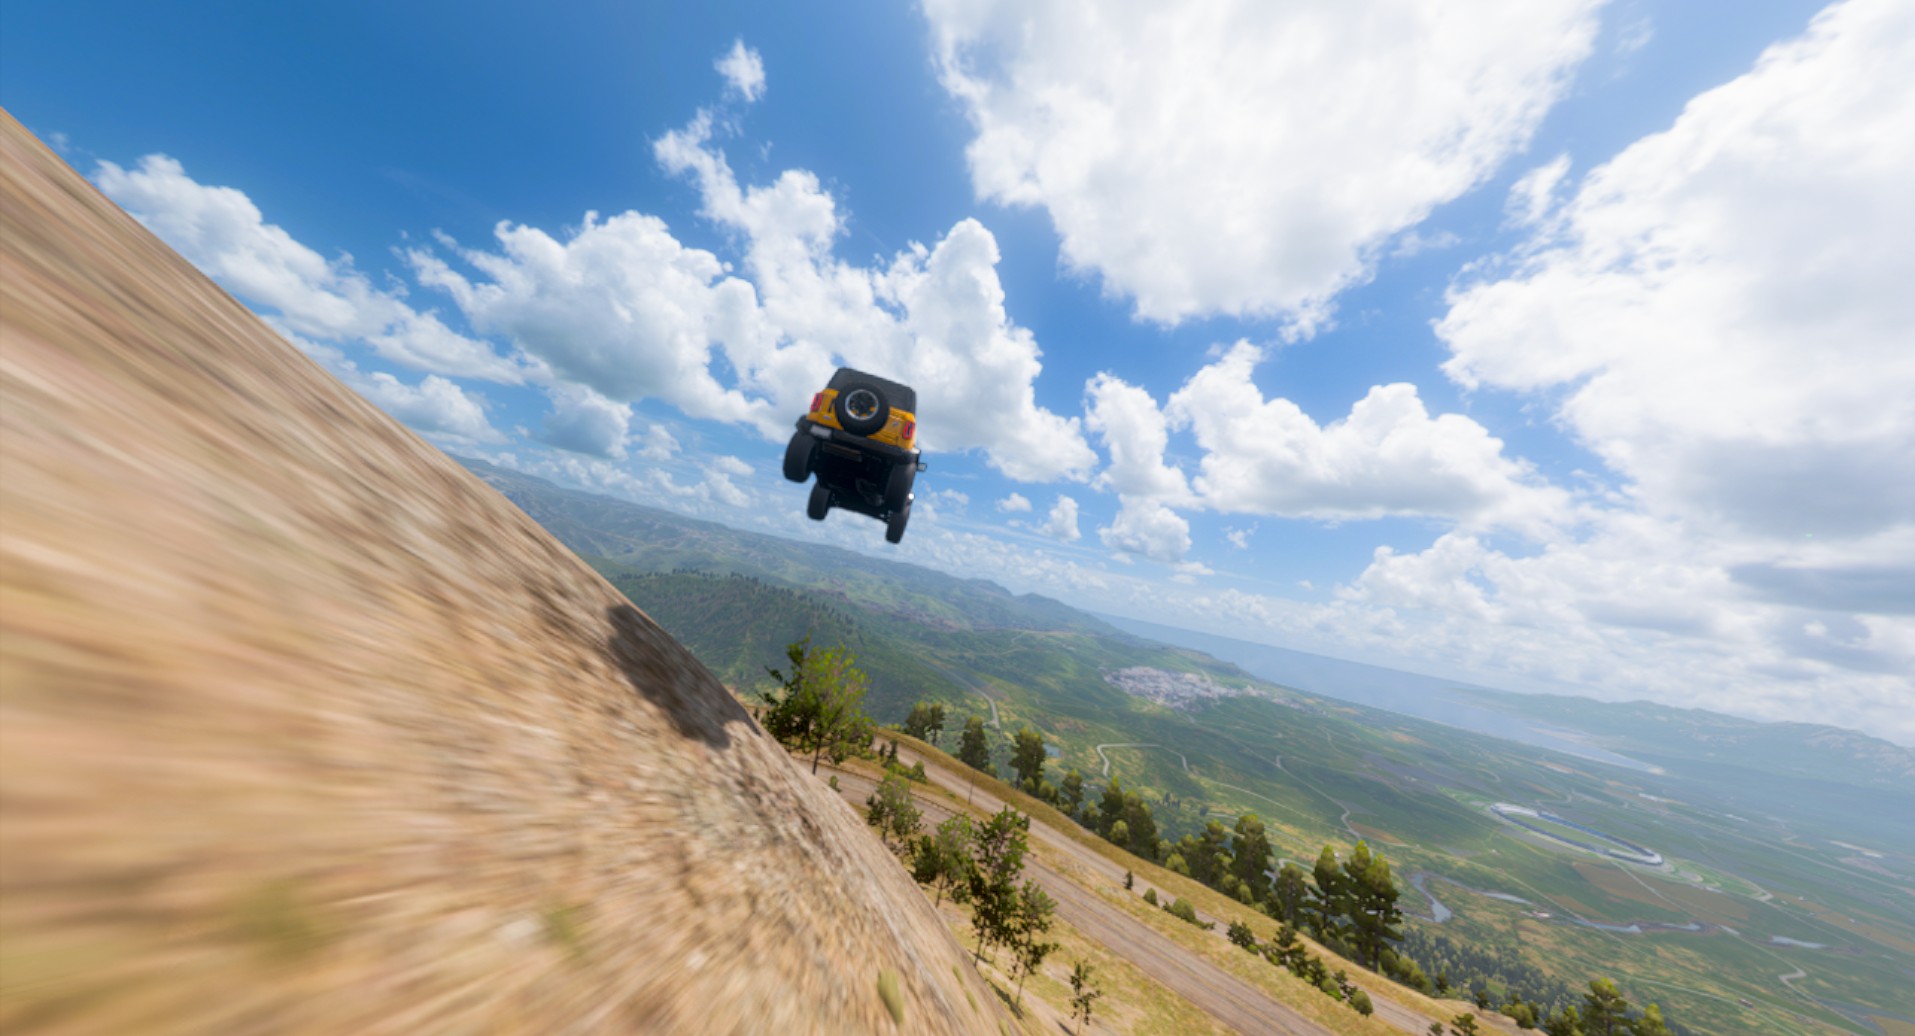 Forza Horizon 5 Review - A winning formula and a beautiful world